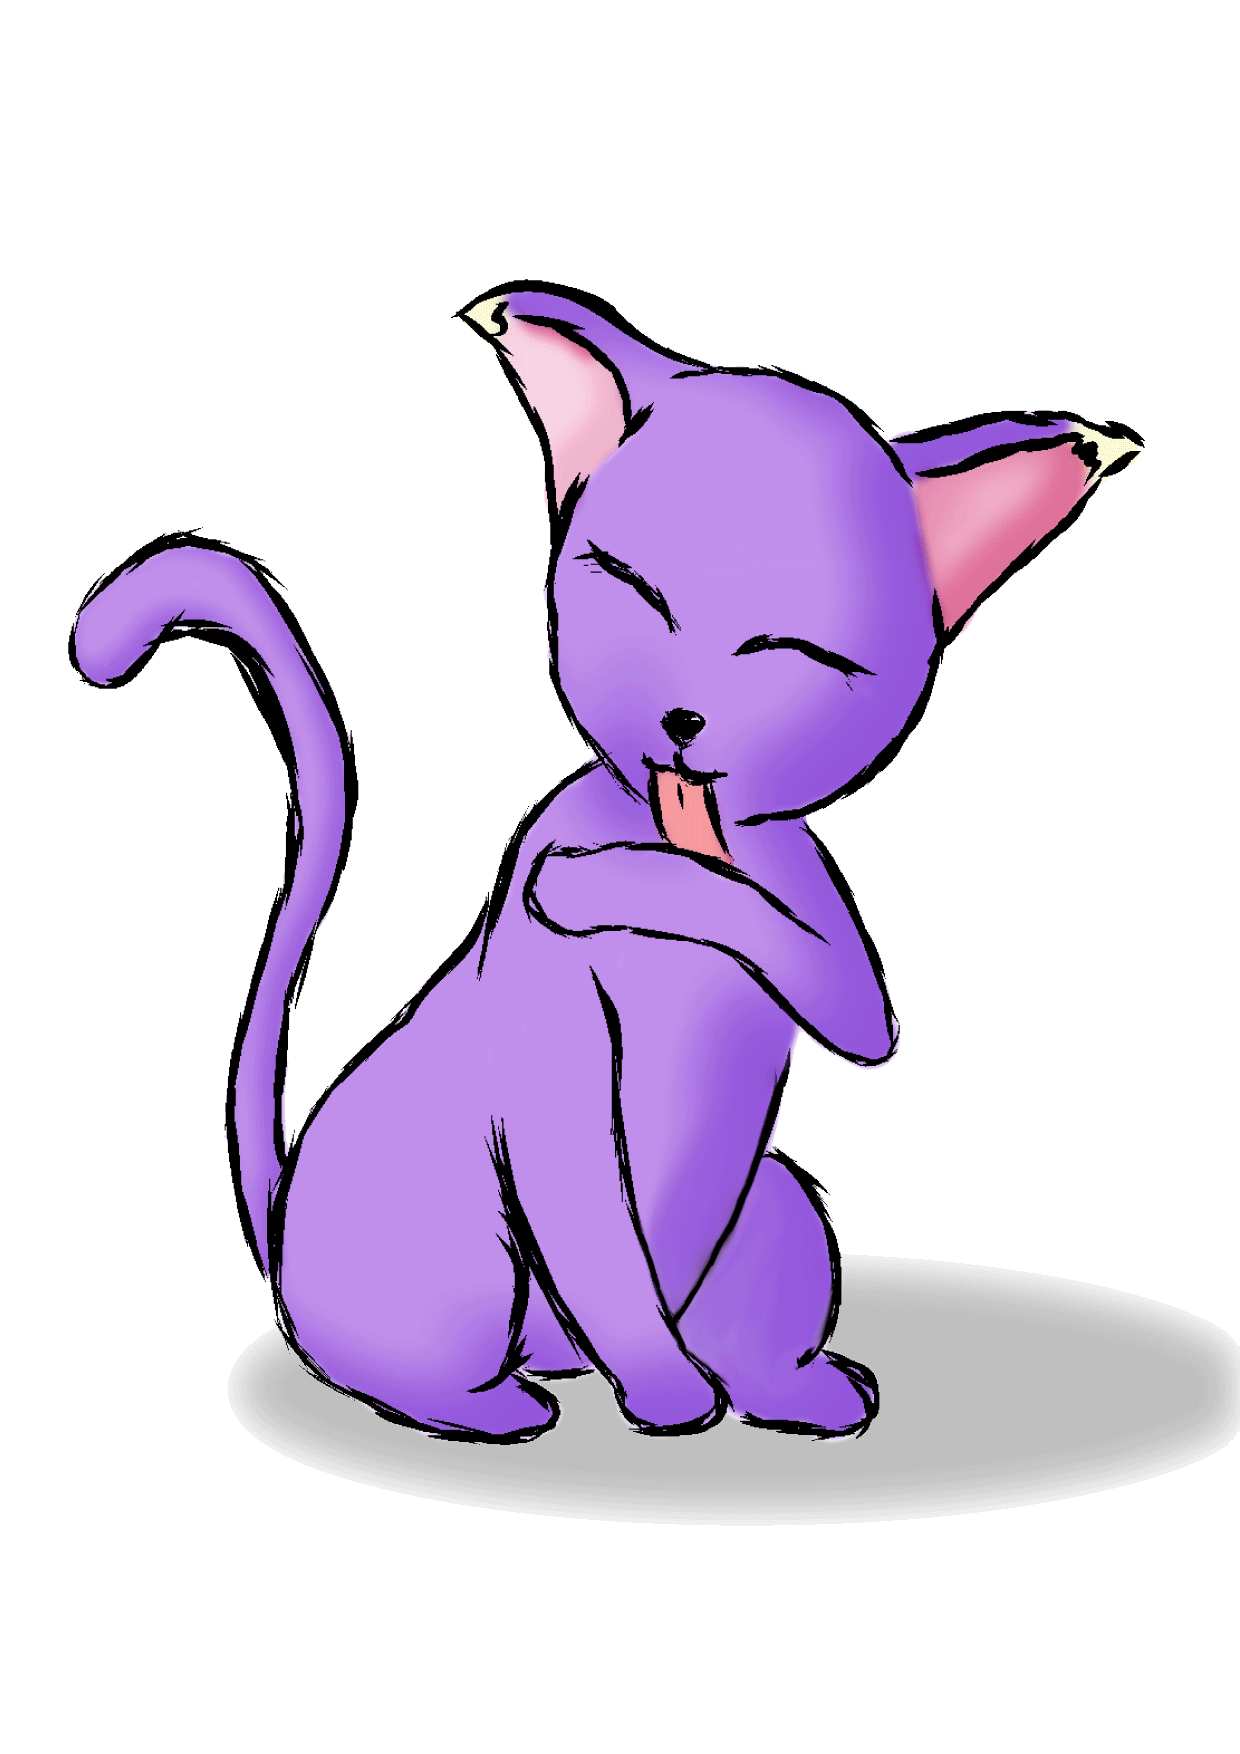 Cute Cat GIF Cartoon - Search